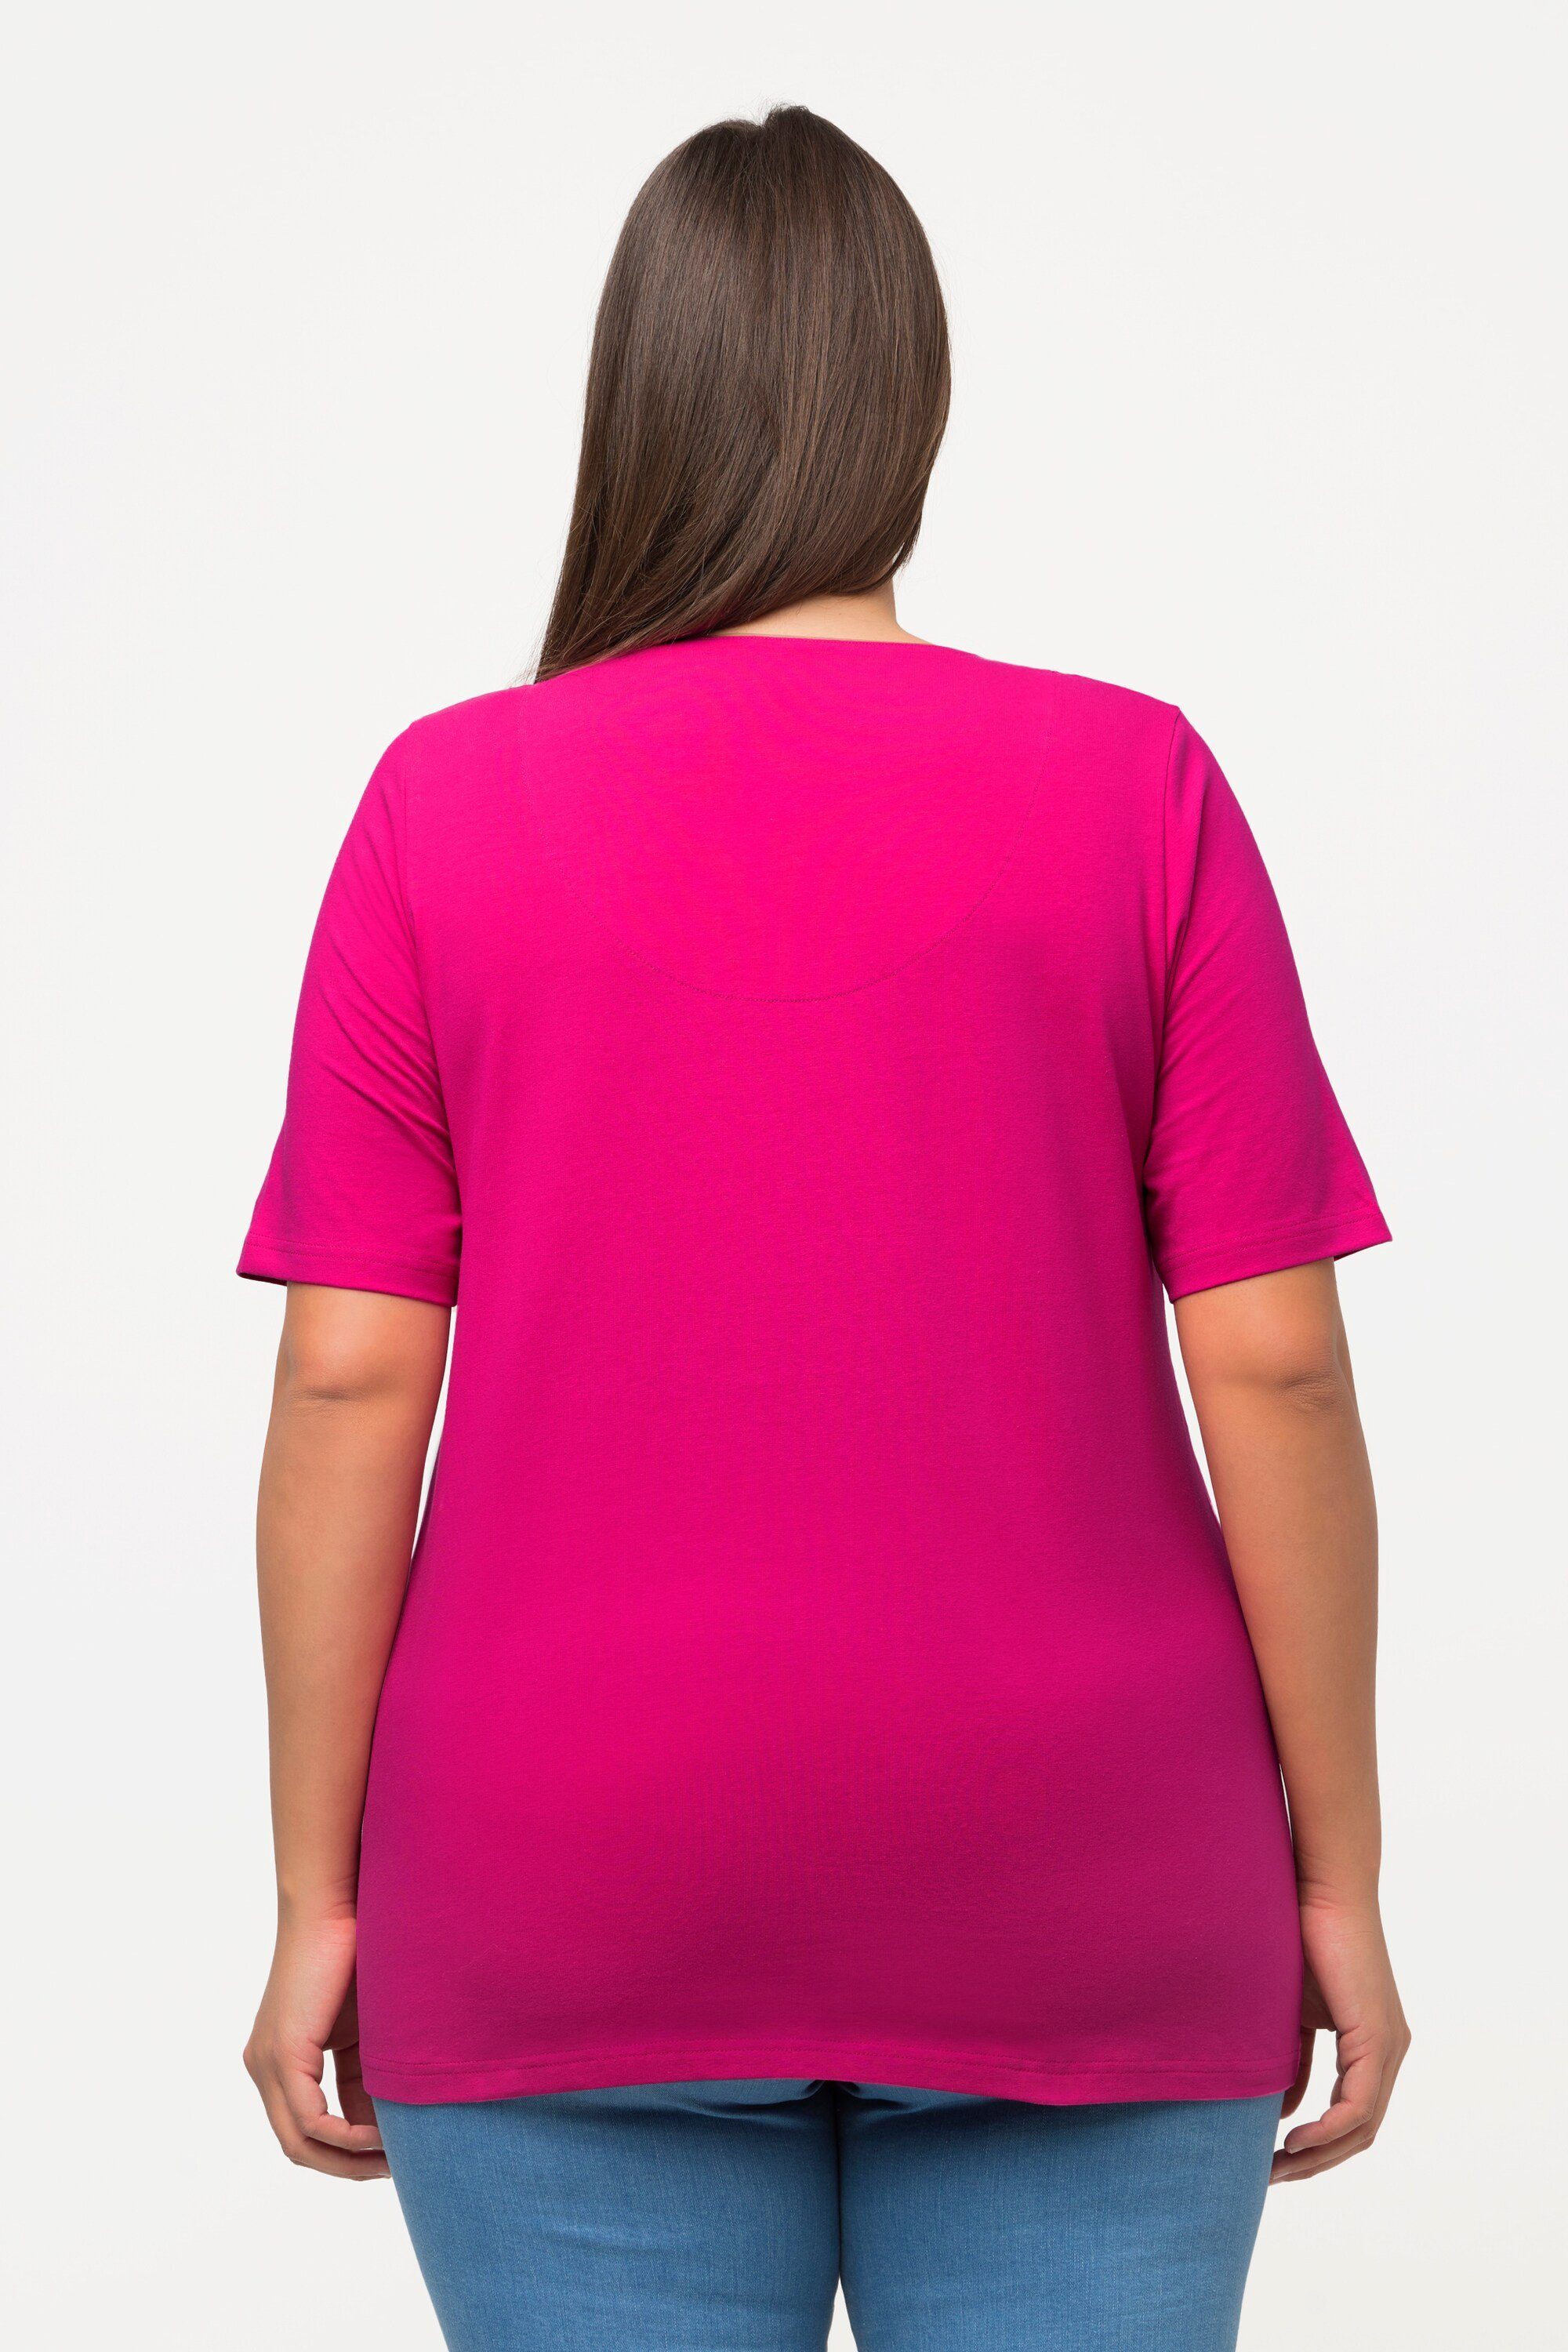 Popken fuchsia T-Shirt Tunika-Ausschnitt pink A-Linie Rundhalsshirt Halbarm Ulla